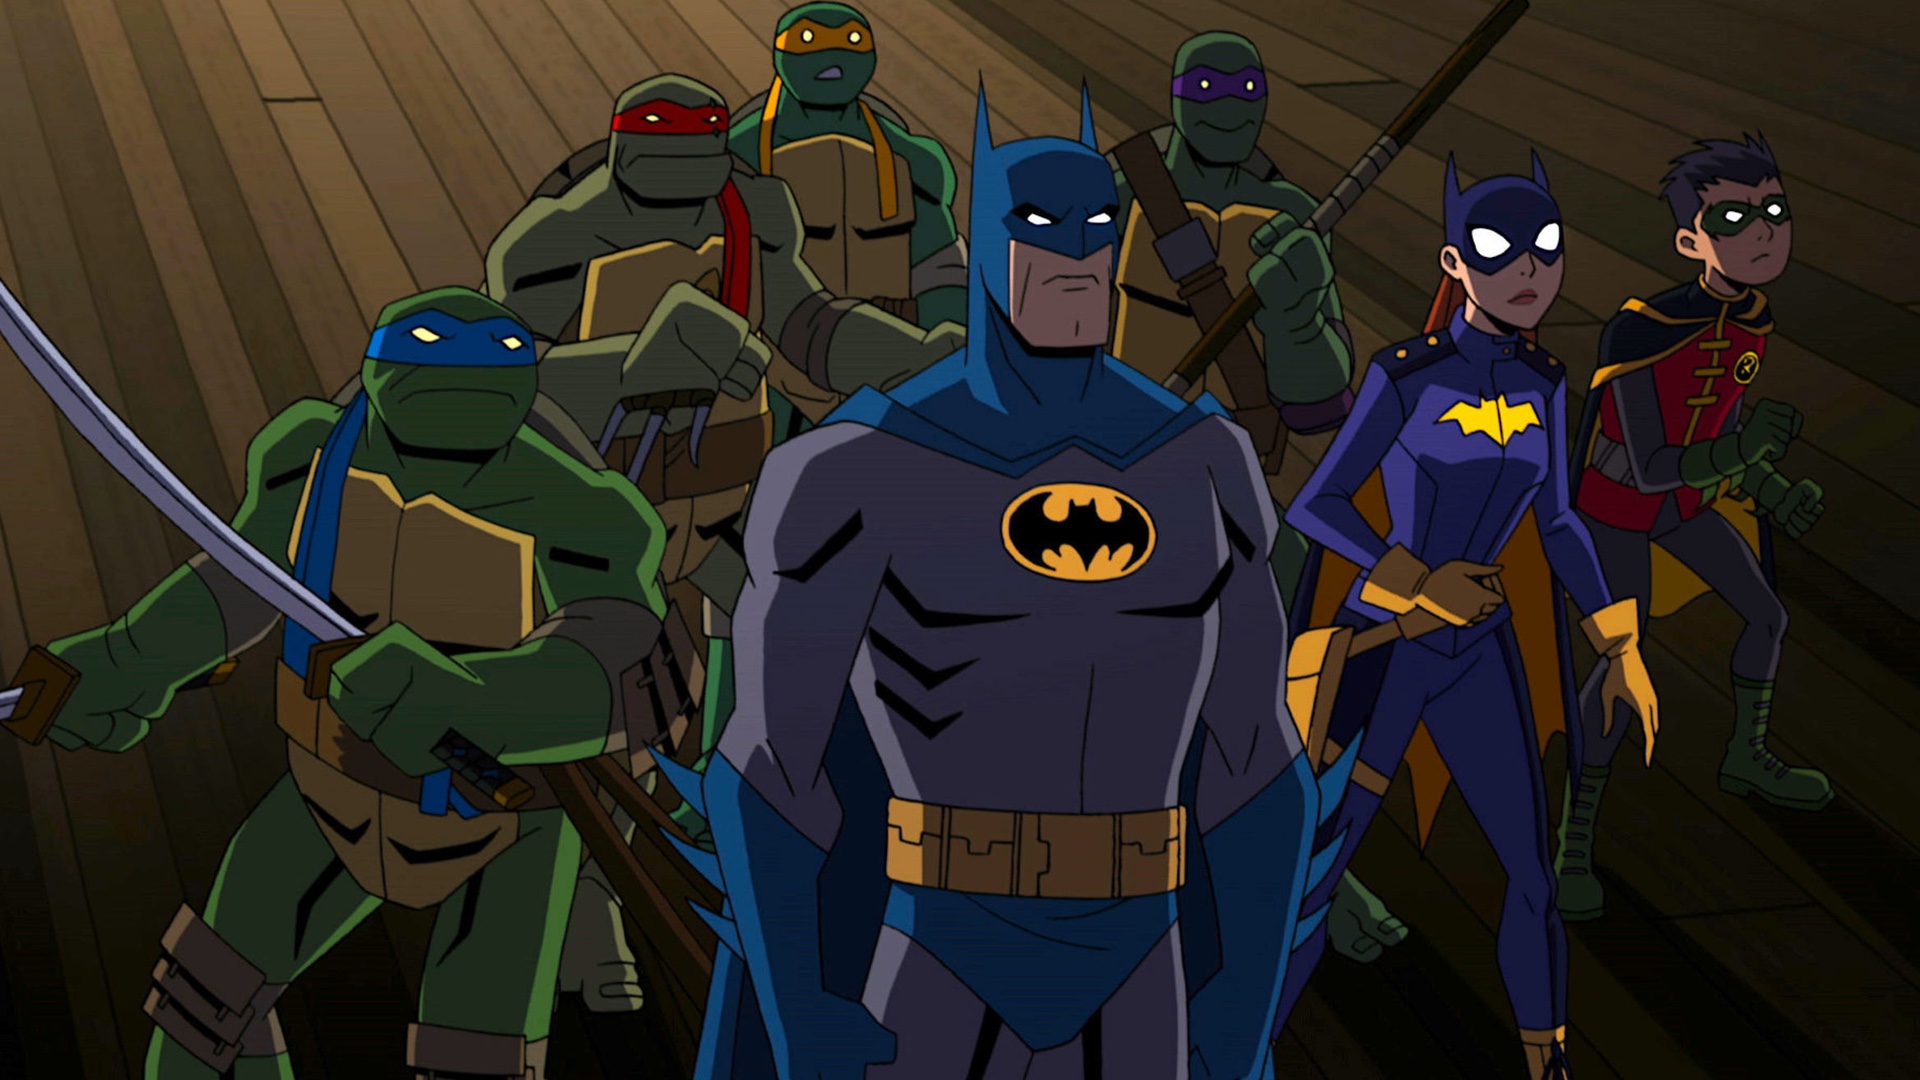 Batman vs. Tartarughe Ninja - Ecco il primo trailer del film animato